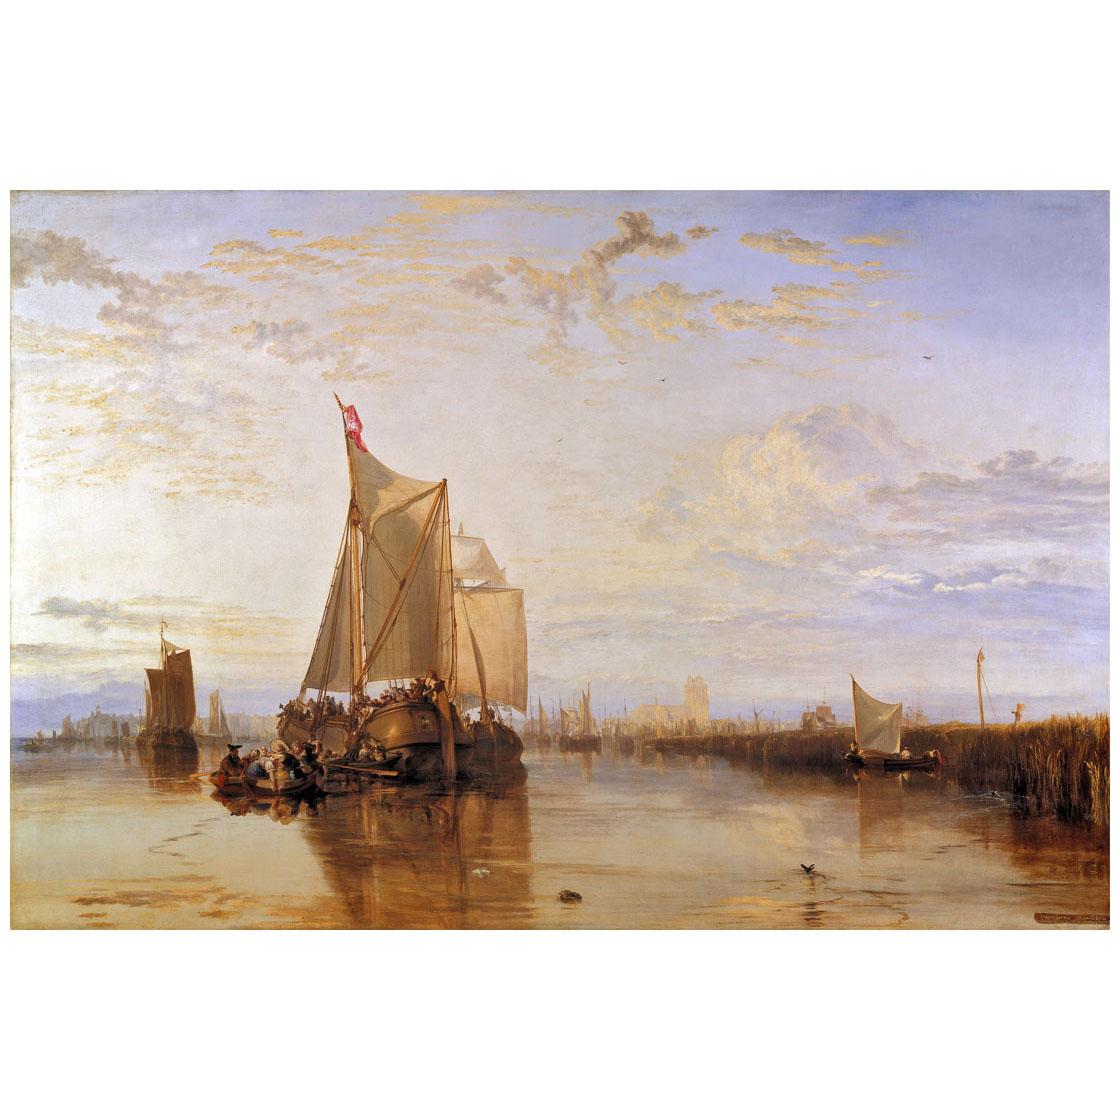 William Turner. Dort or Dordrecht. 1818. Yale Art Center